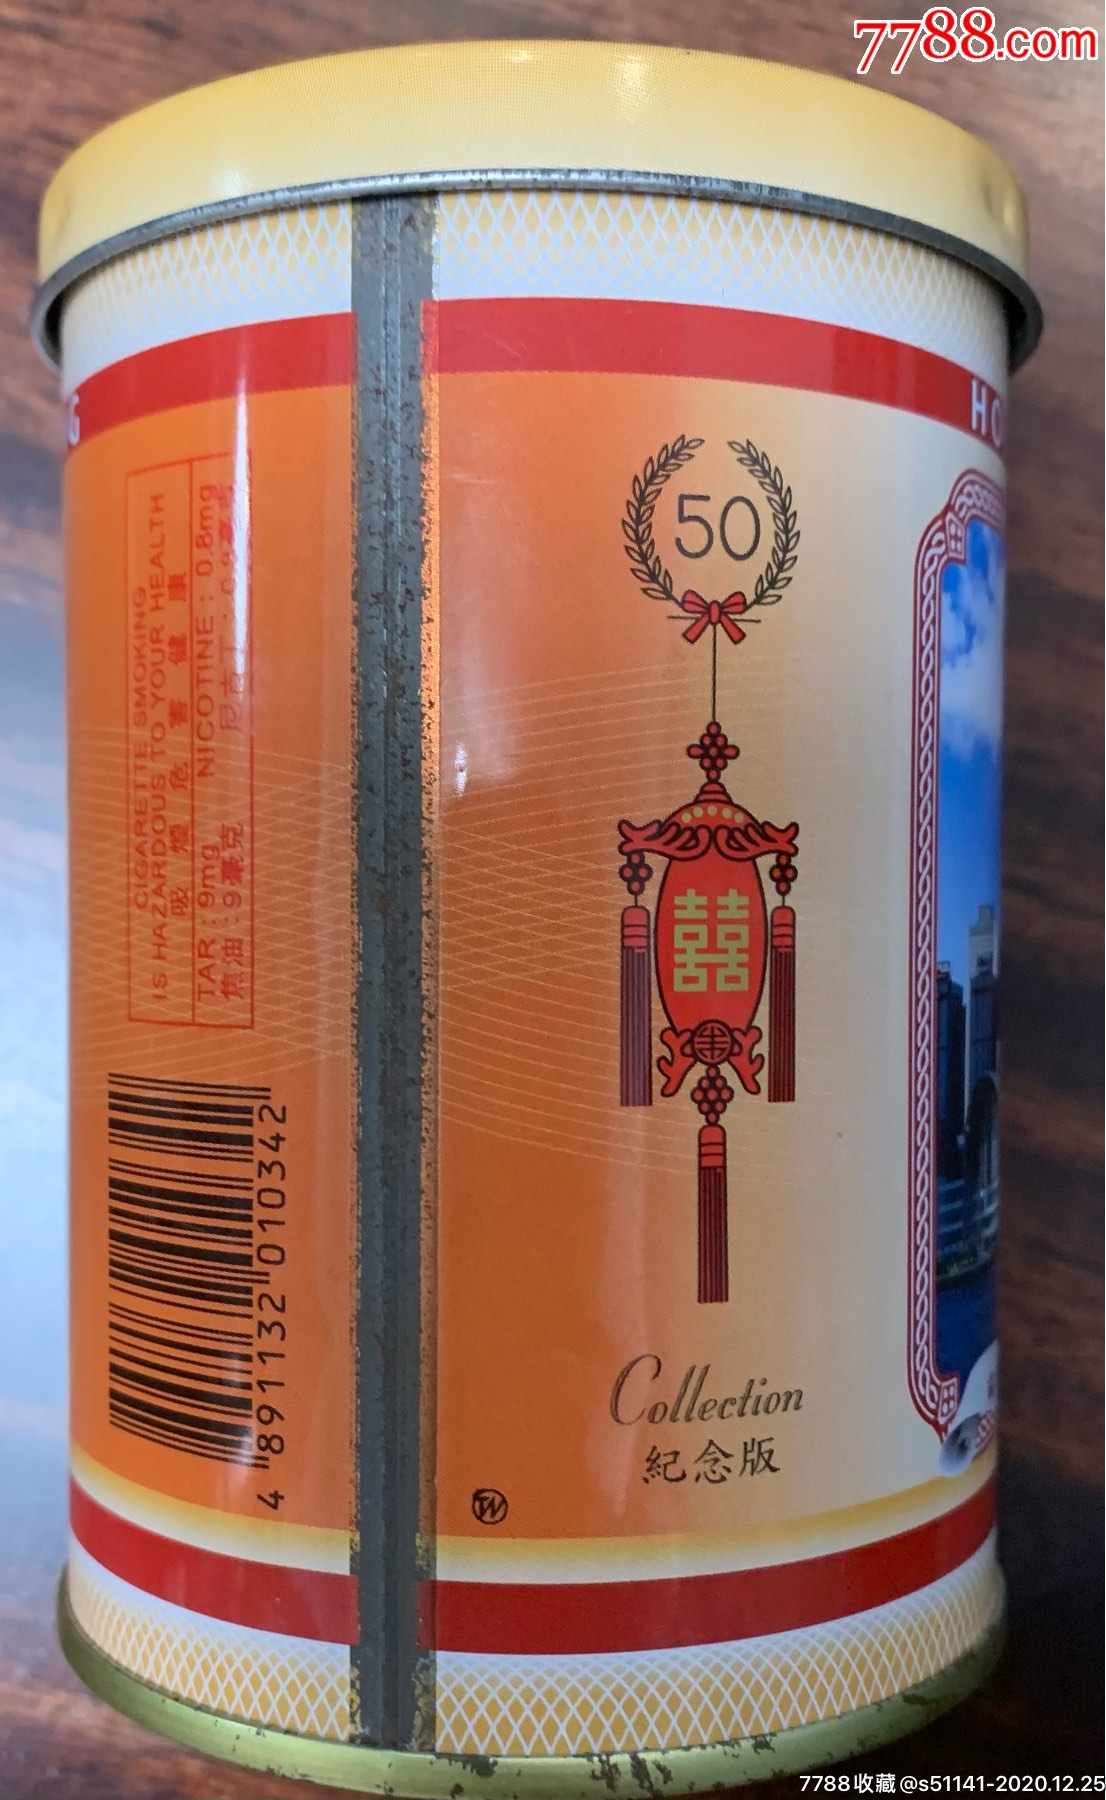 早期版南洋兄弟股份红双喜香港风光50支铁制纪念版3d标